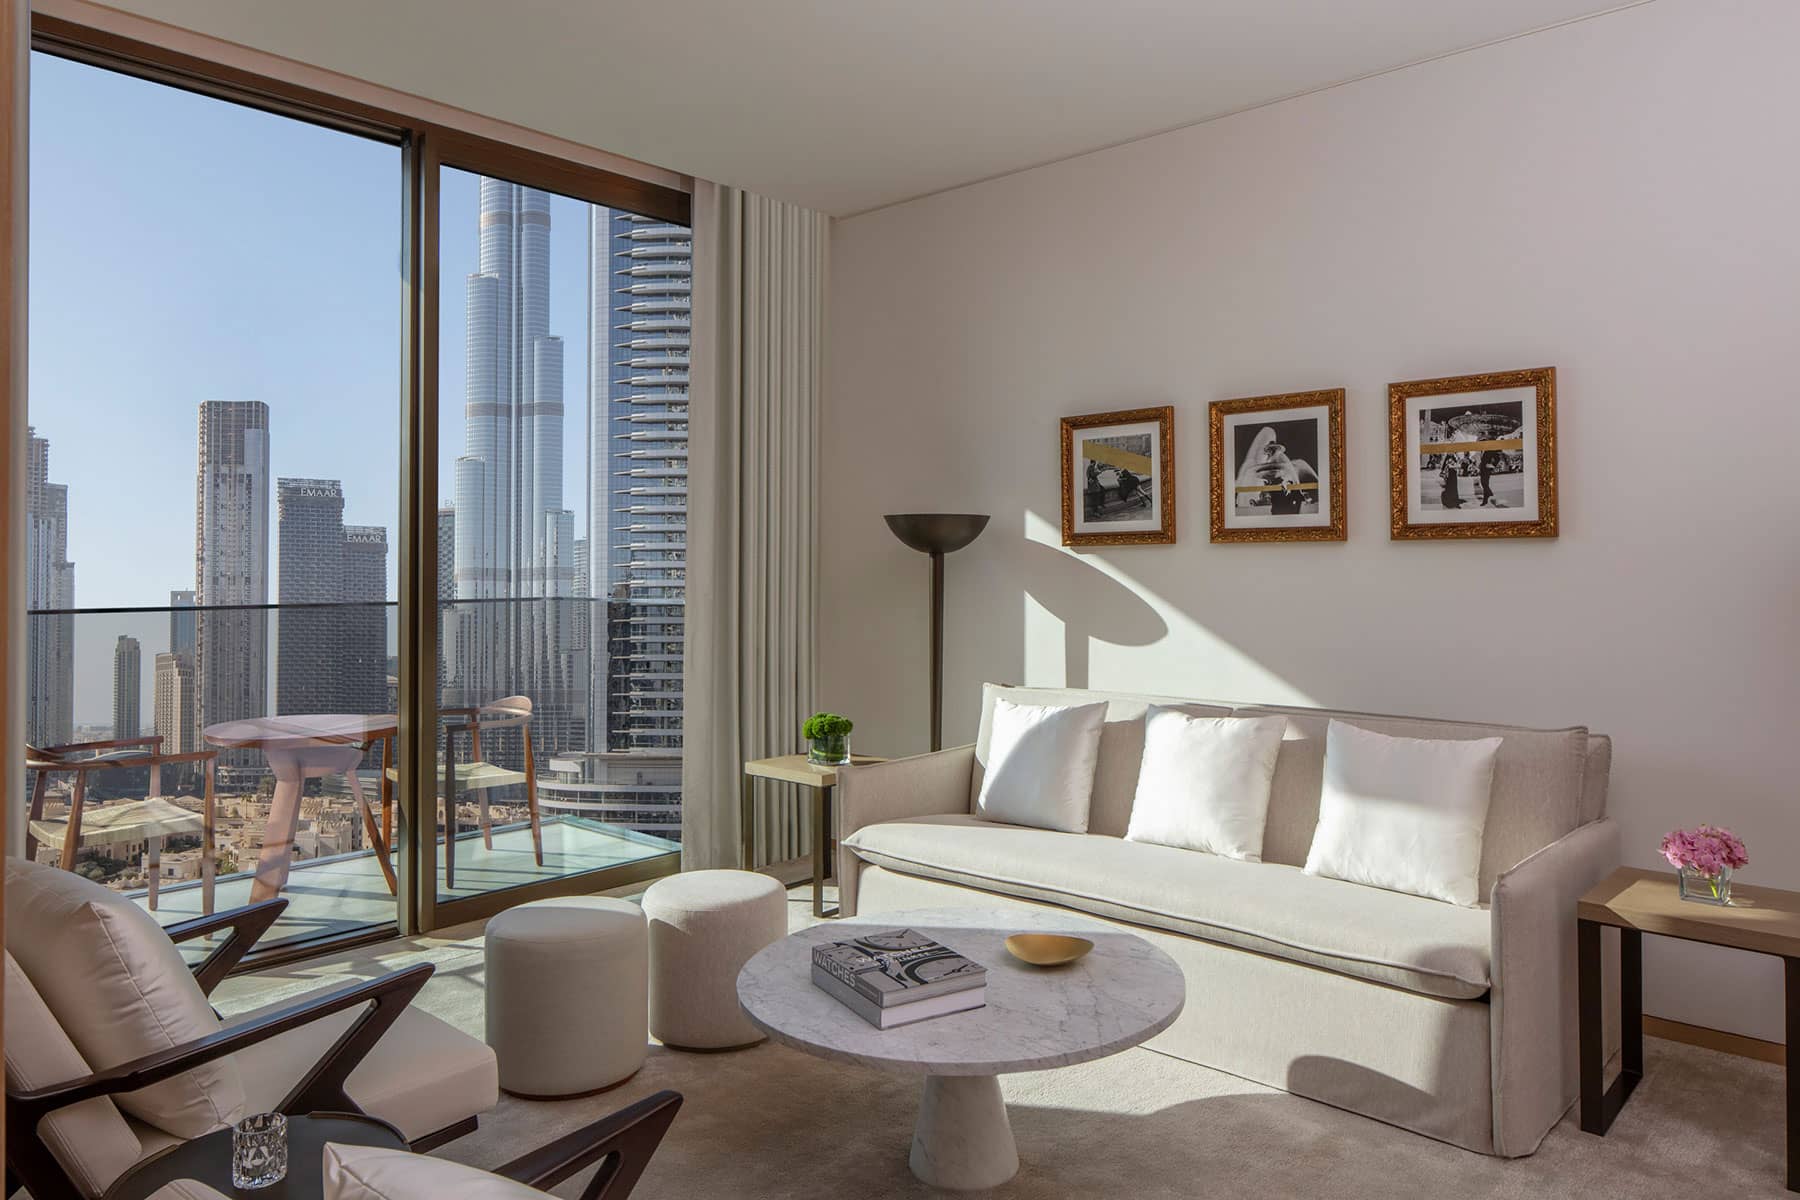 Hospitality Photography: The Dubai Edition